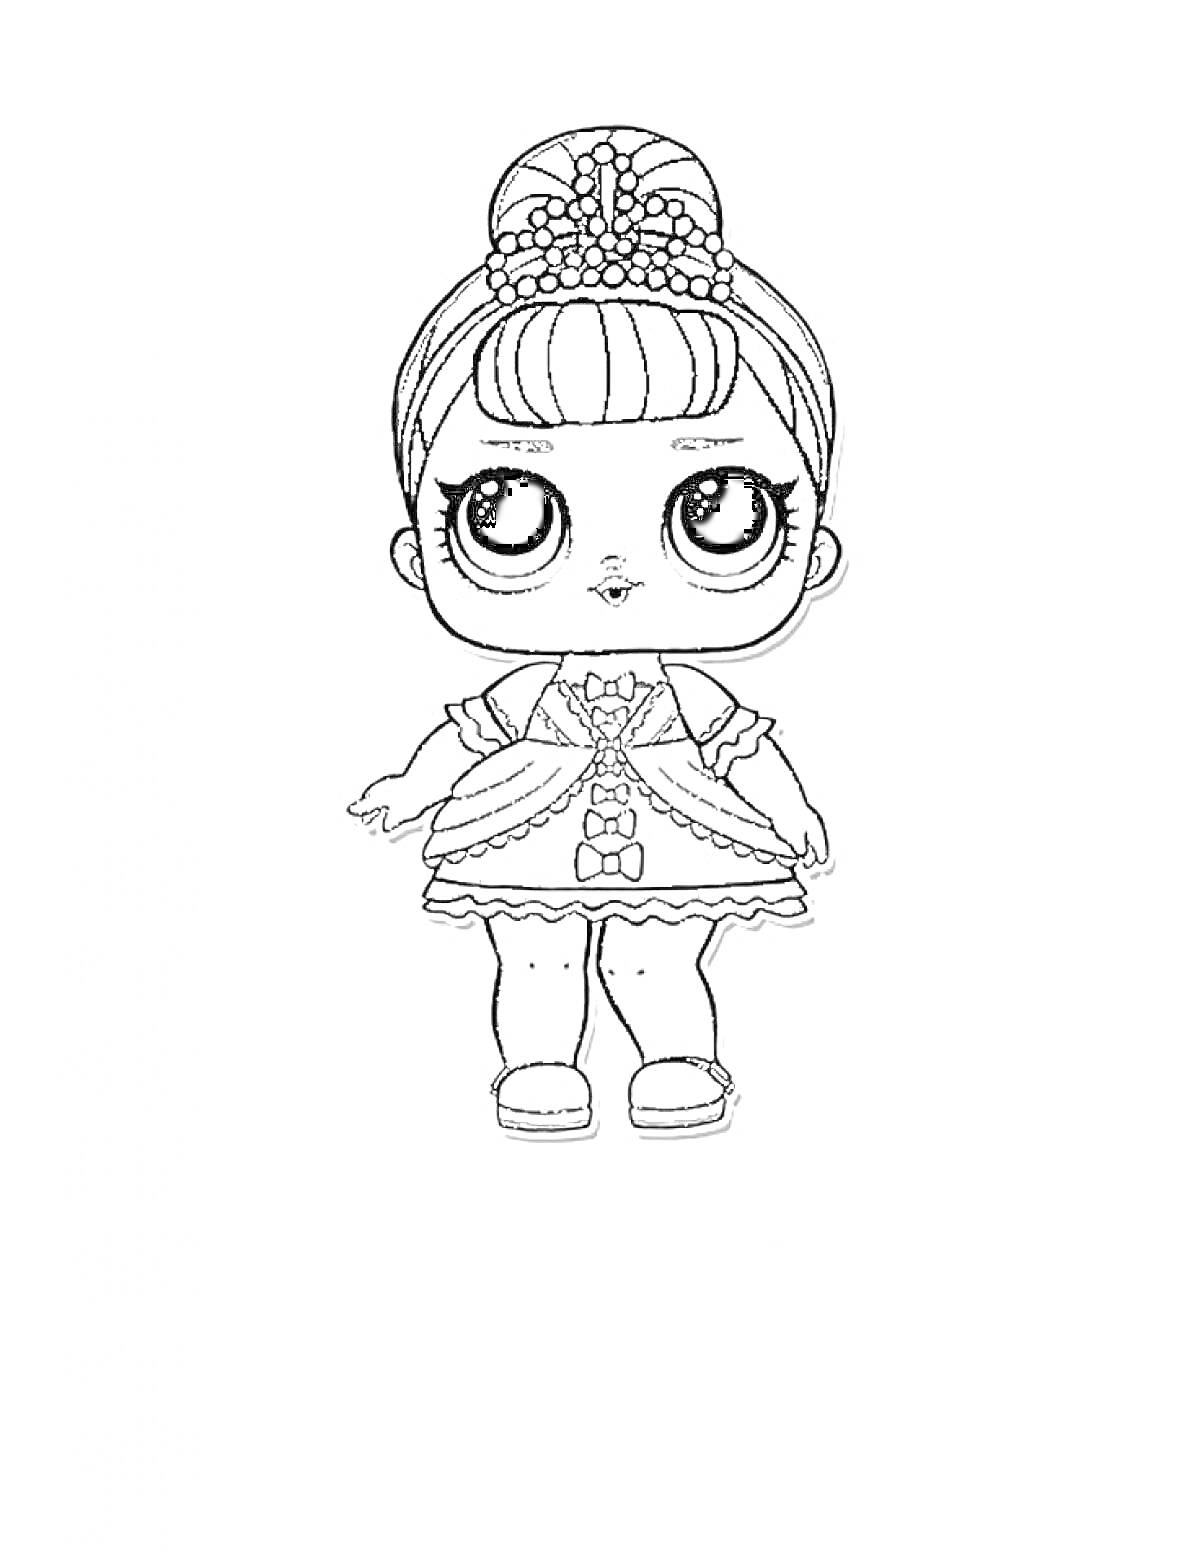 Раскраска Кукла Лол в платье с бантиками и короной, босоножки, волосы собраны в пучок